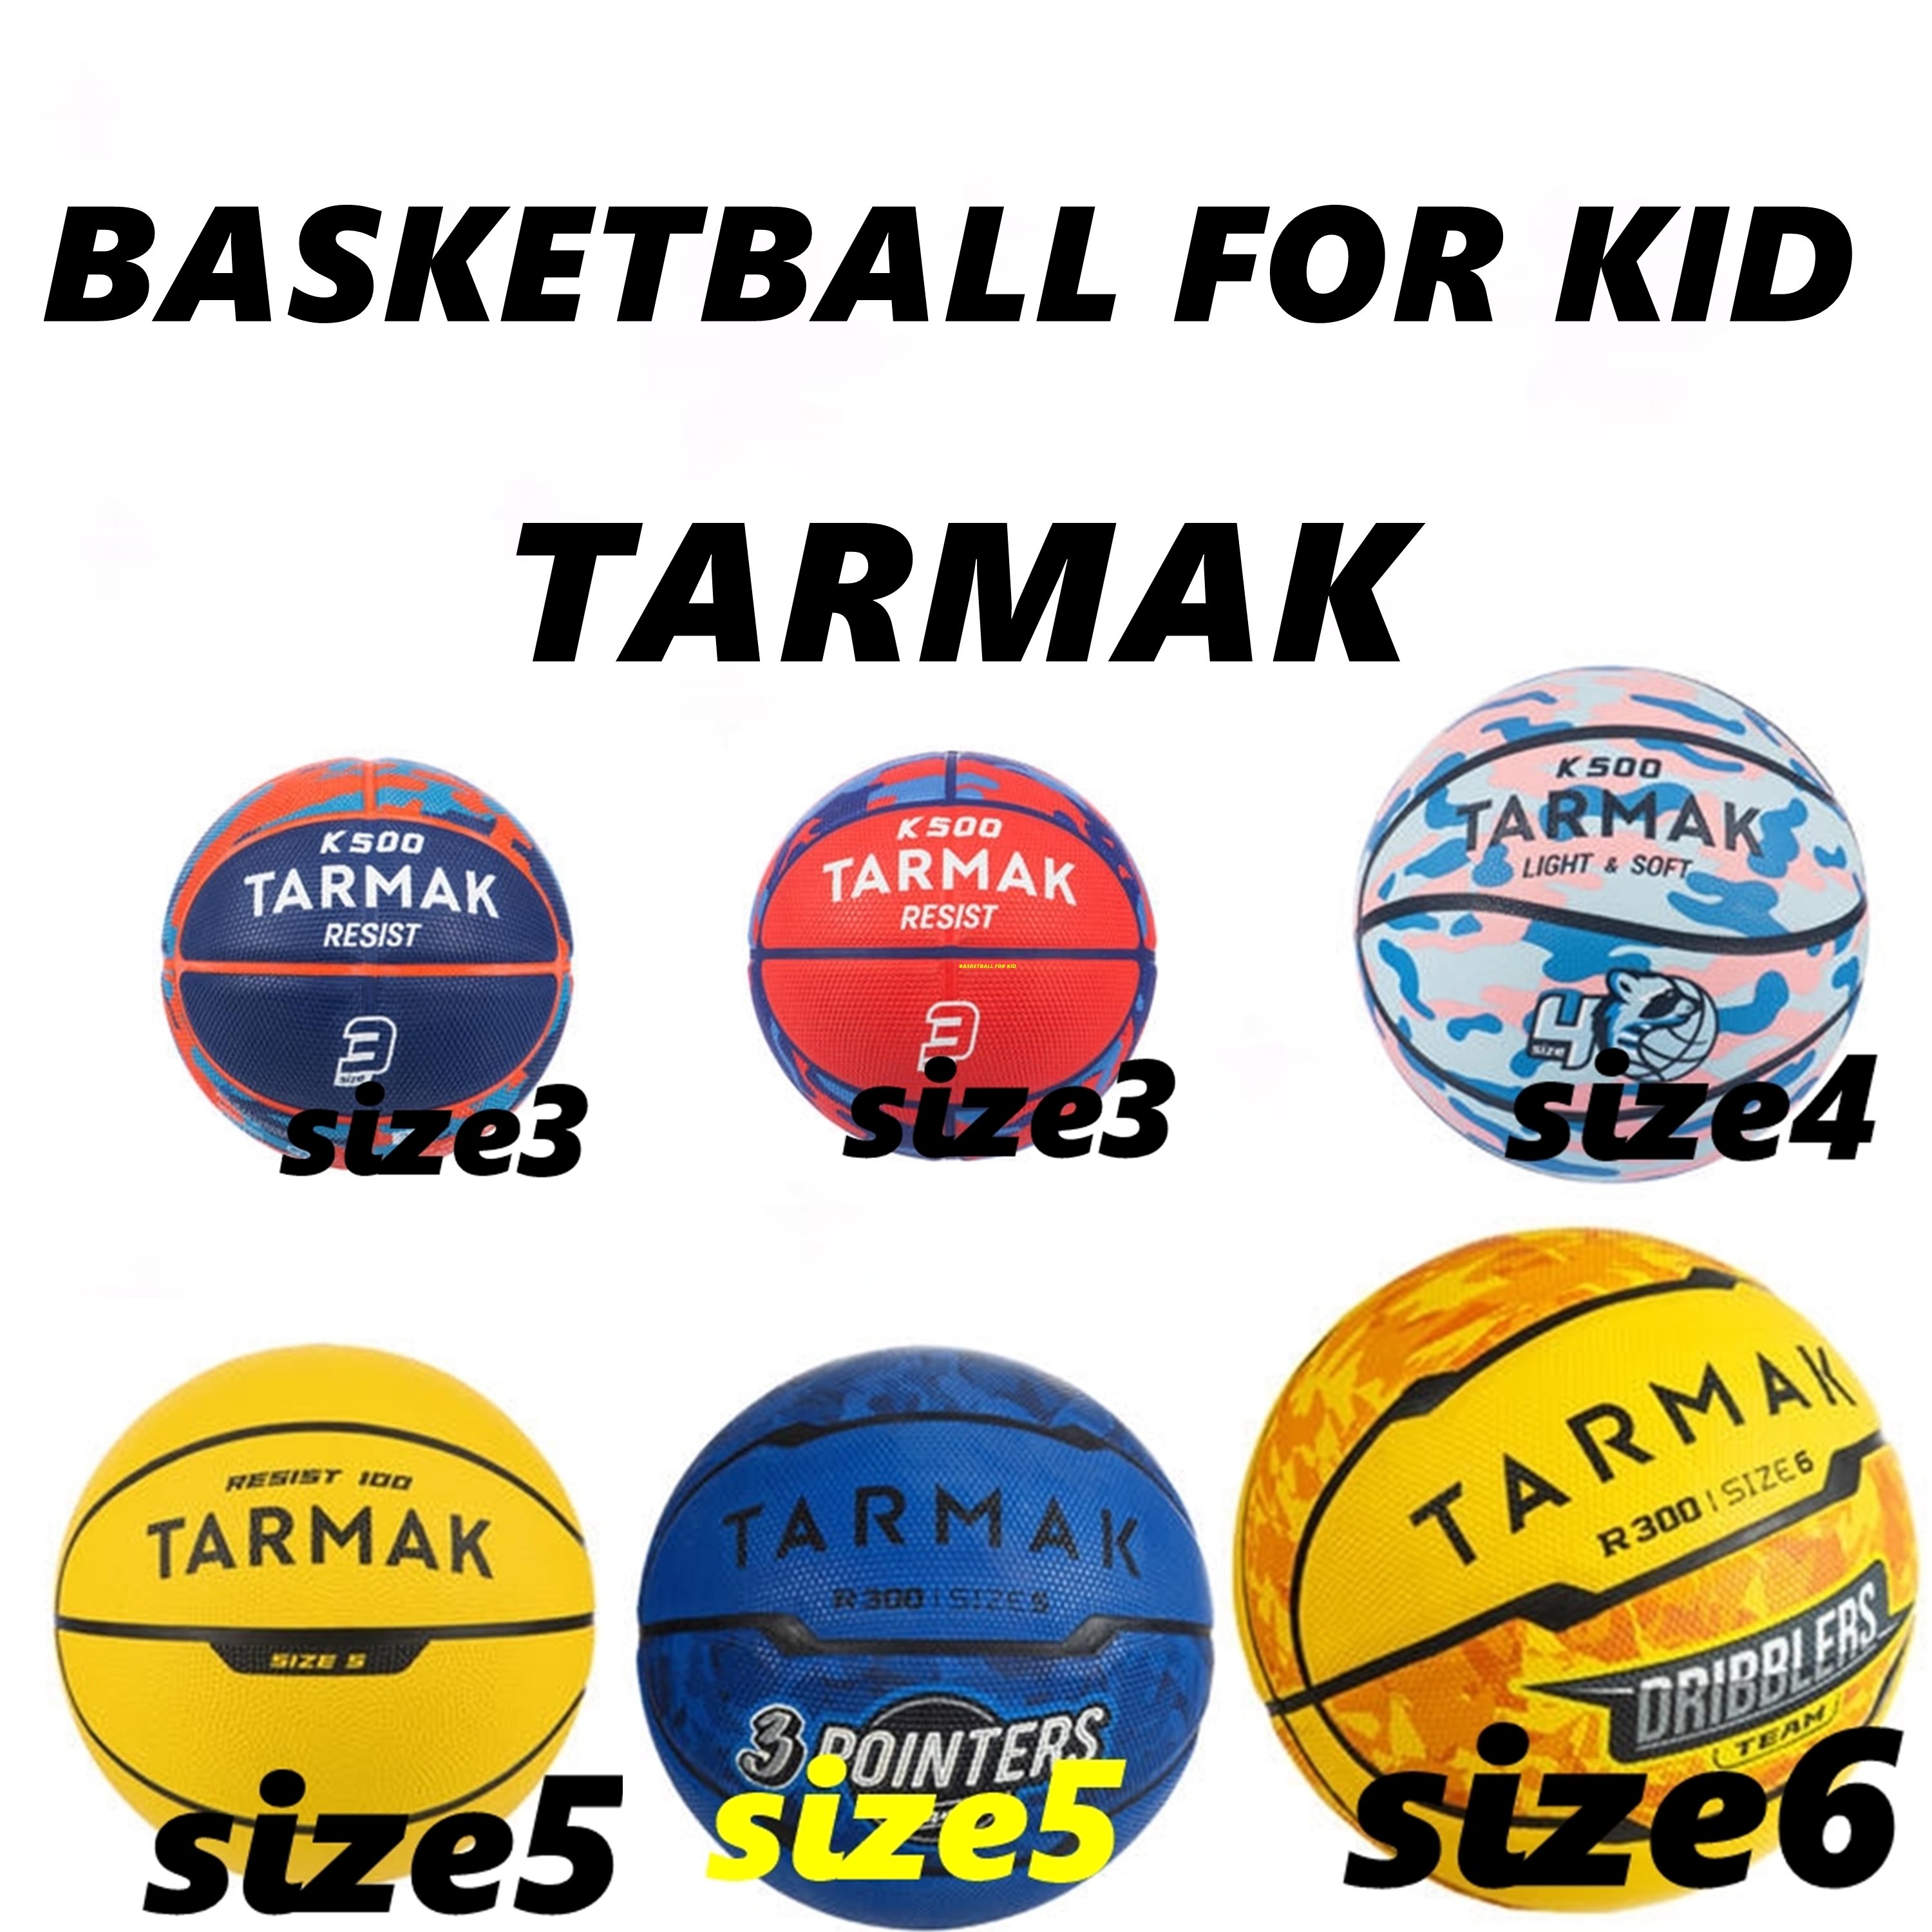 ลูกบาส ลูกบาสเก็ตบอล สำหรับ เด็ก BASKETBALL FOR KID TARMAK ลูกบาสเด็ก ลูกบาสเด็กโต ลูกบาสเกตบอลเด็ก